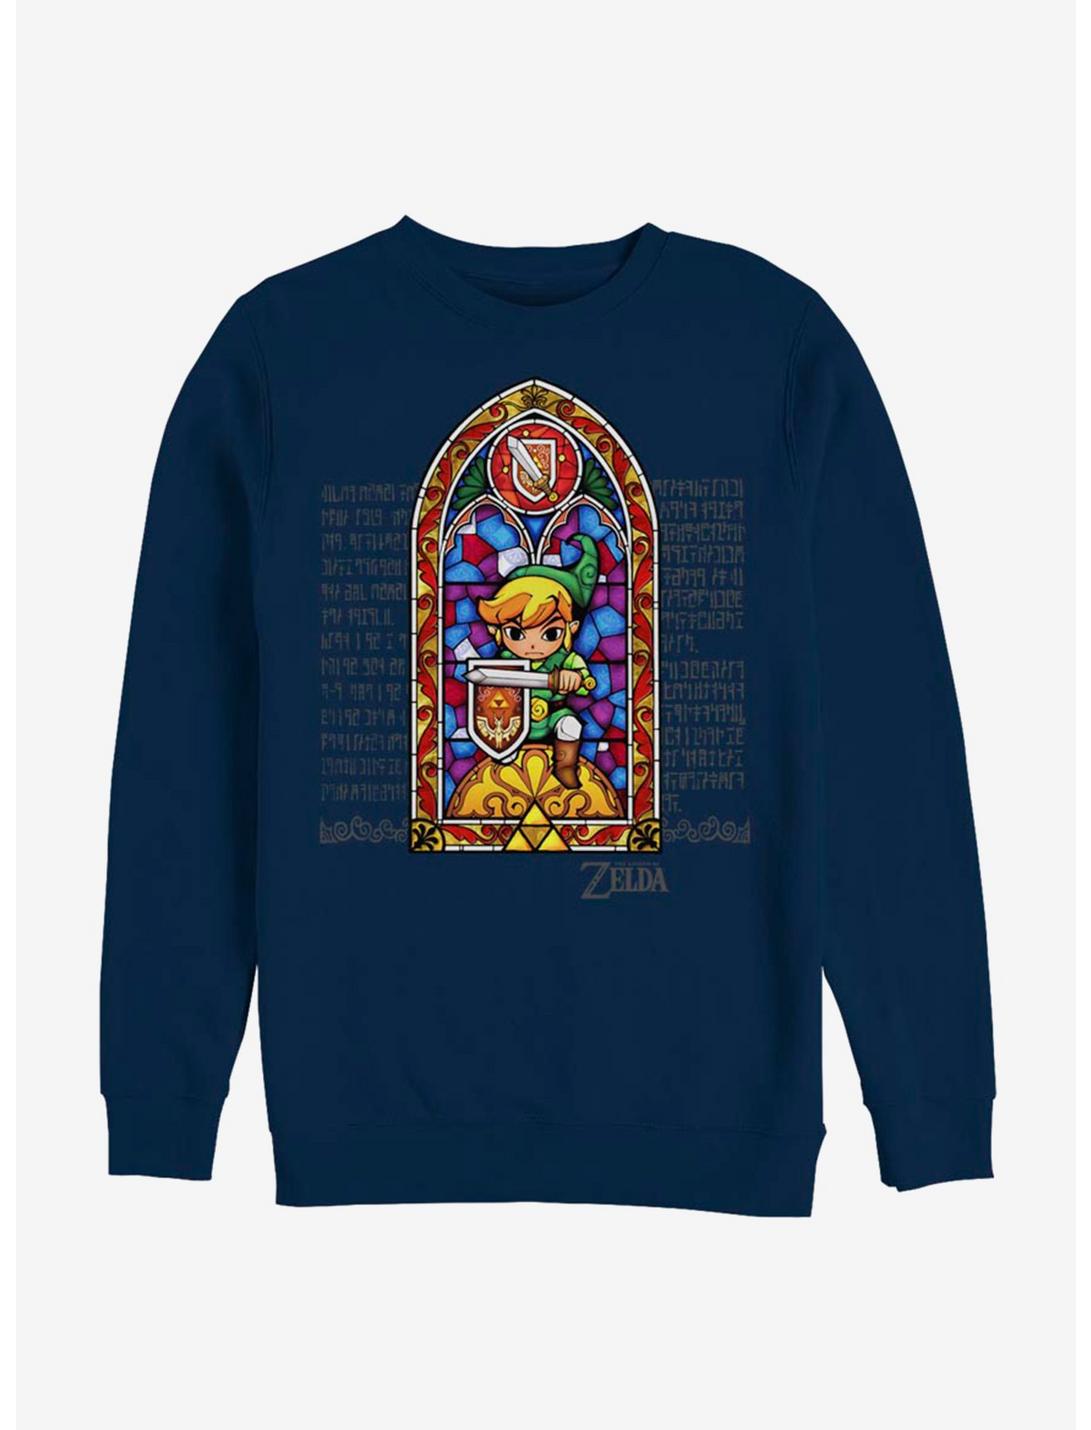 Nintendo The Legend Of Zelda Stained Glass Sweatshirt, NAVY, hi-res